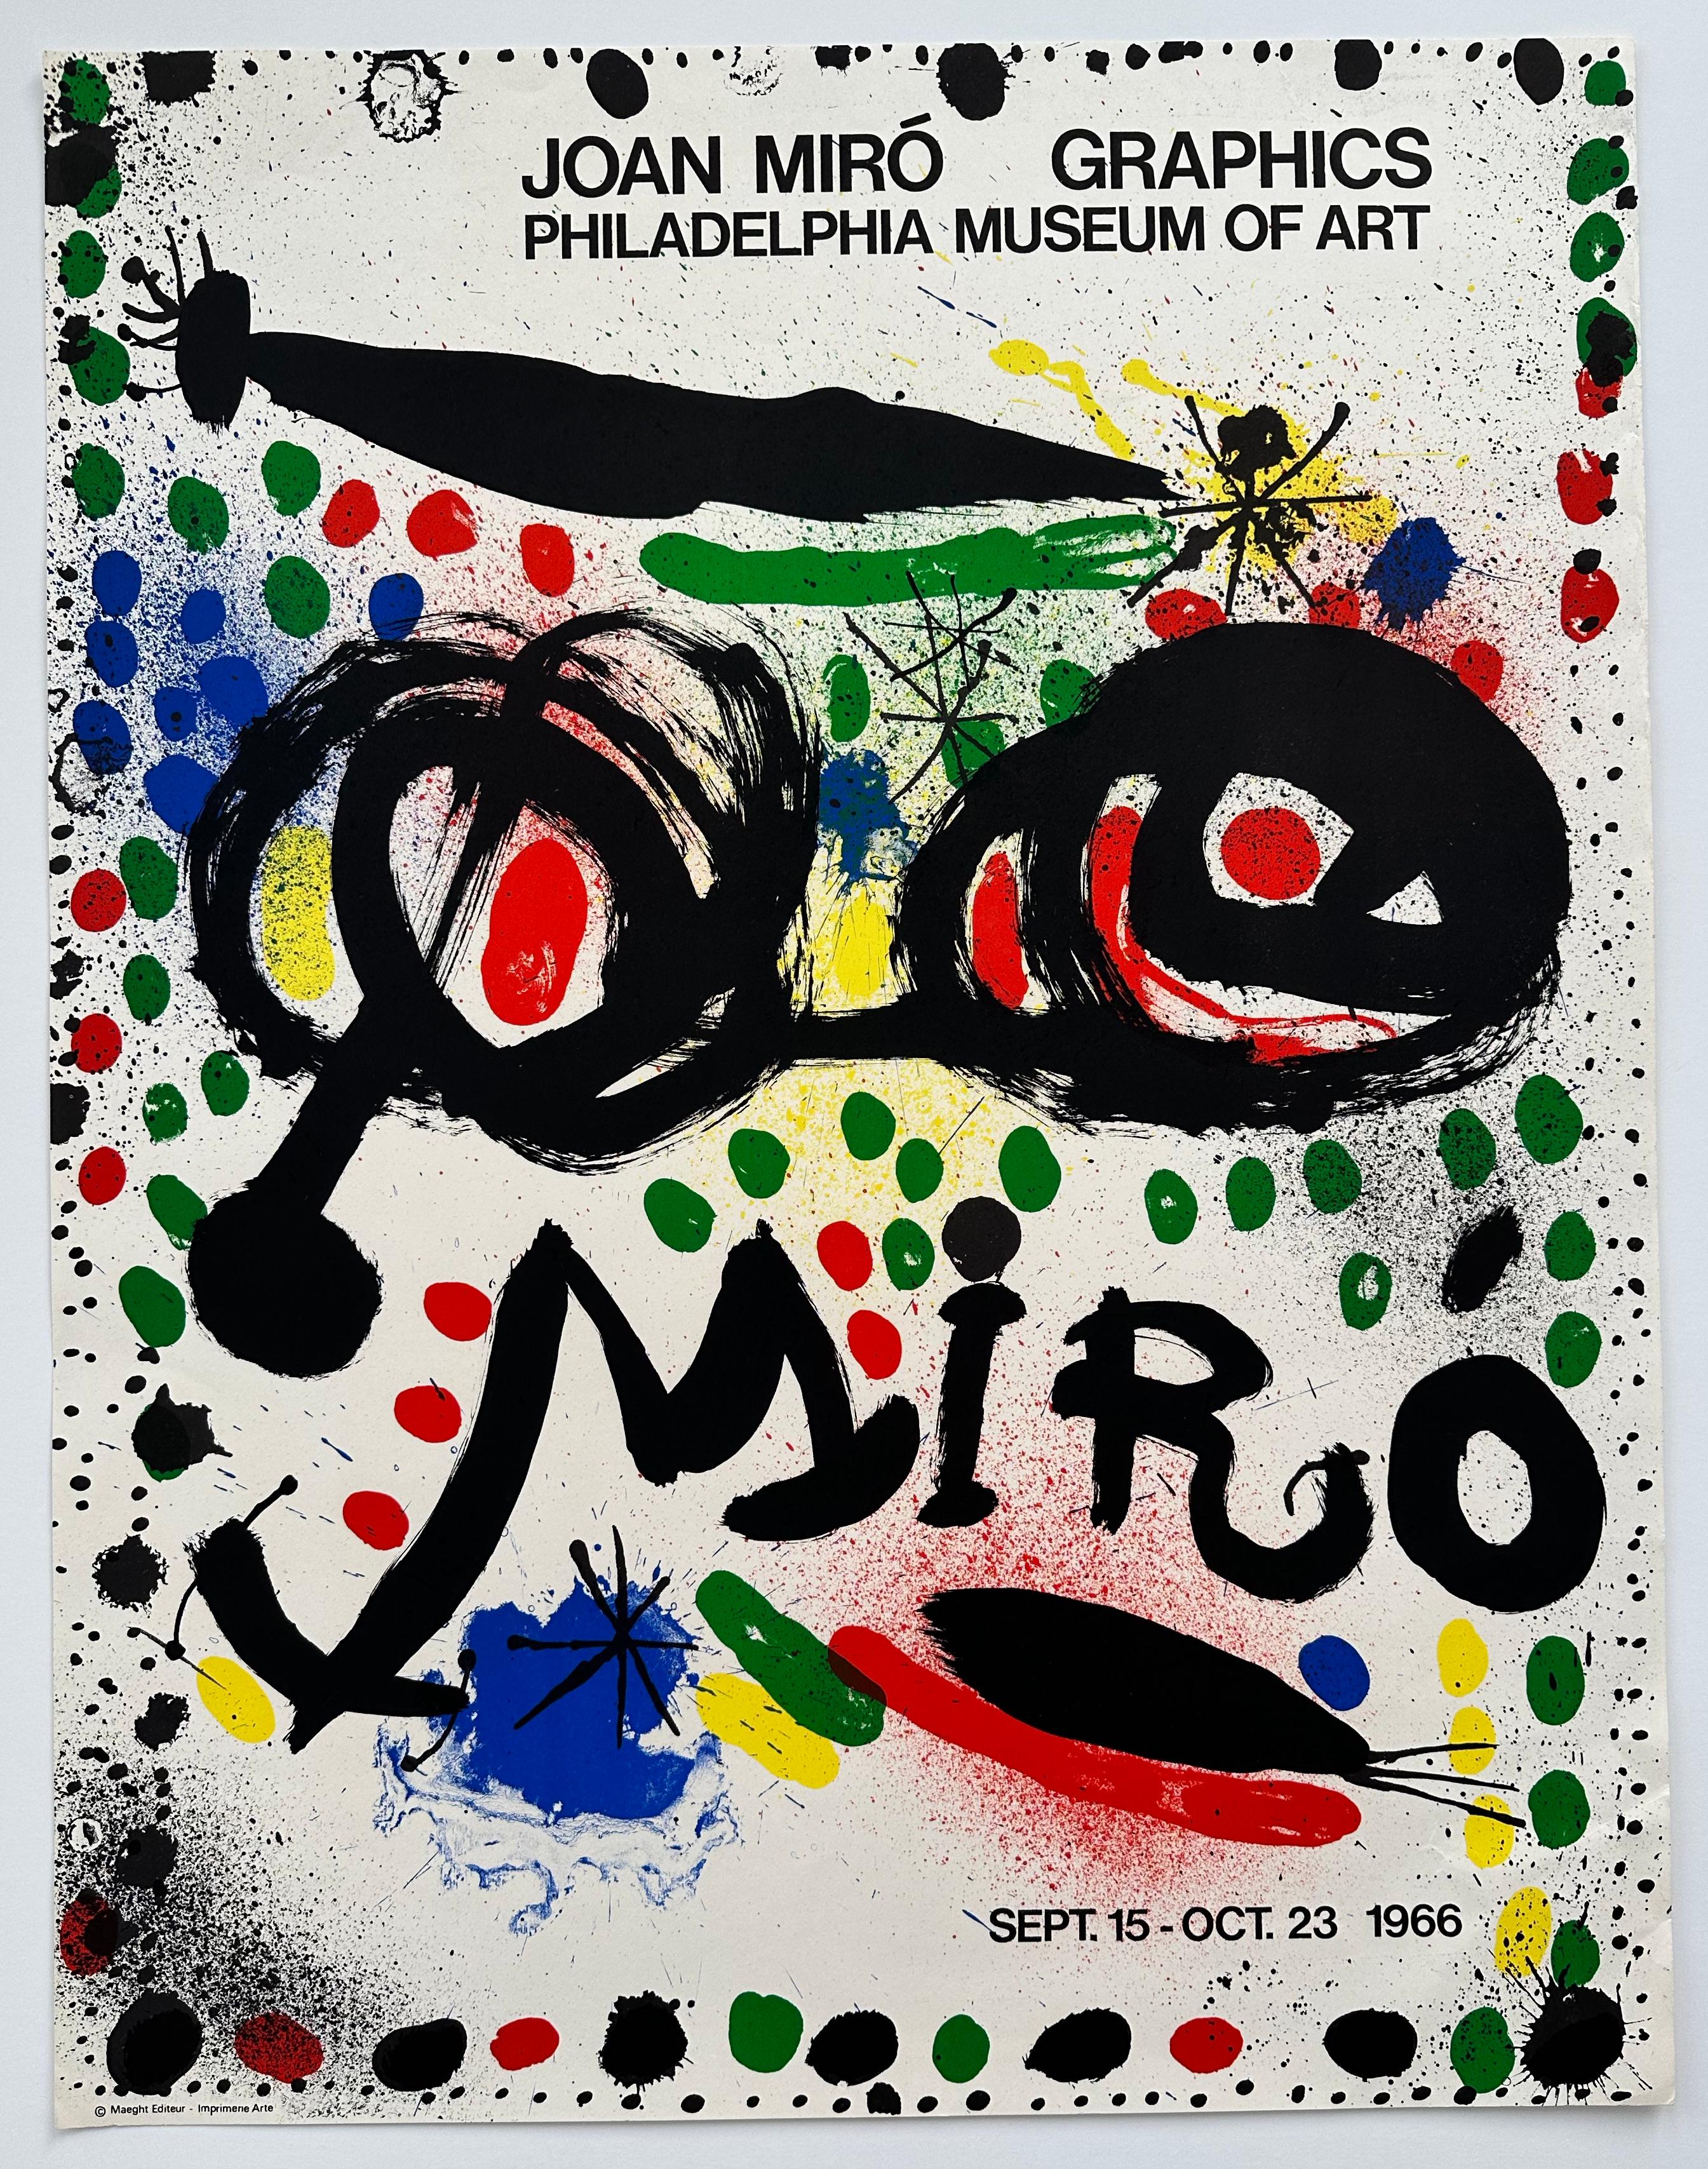 Abstract Print (after) Joan Miró - Affiche d'exposition de Philadelphie de 1966